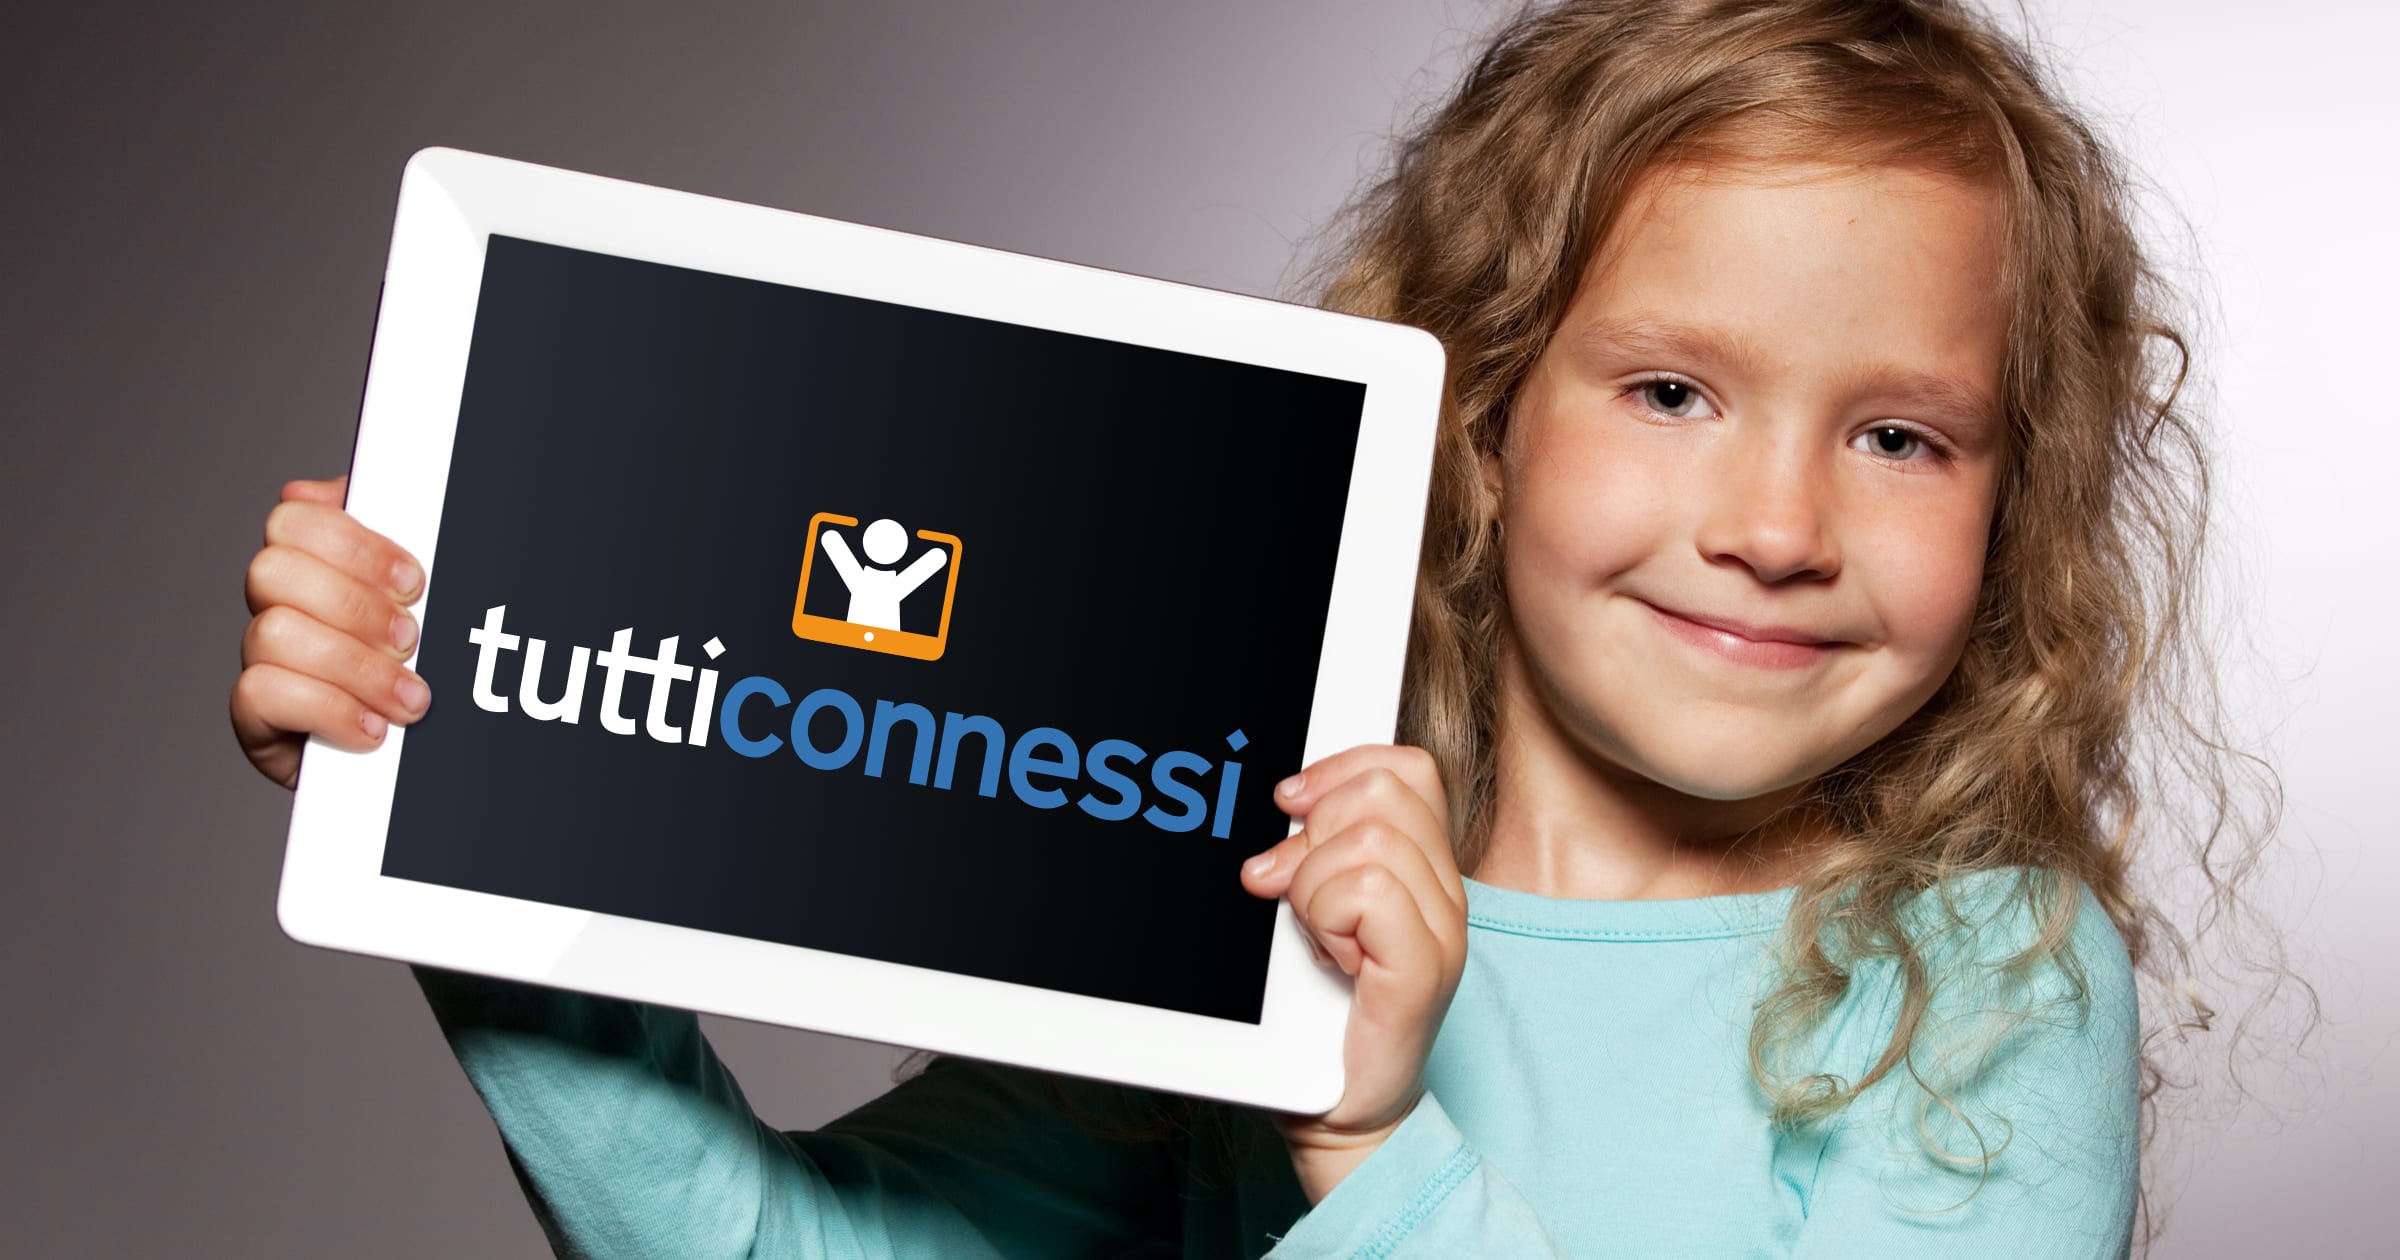 A Torino nasce “TuttiConnessi” che coinvolge le aziende per la raccolta solidale di strumenti informatici  destinati agli studenti in difficoltà